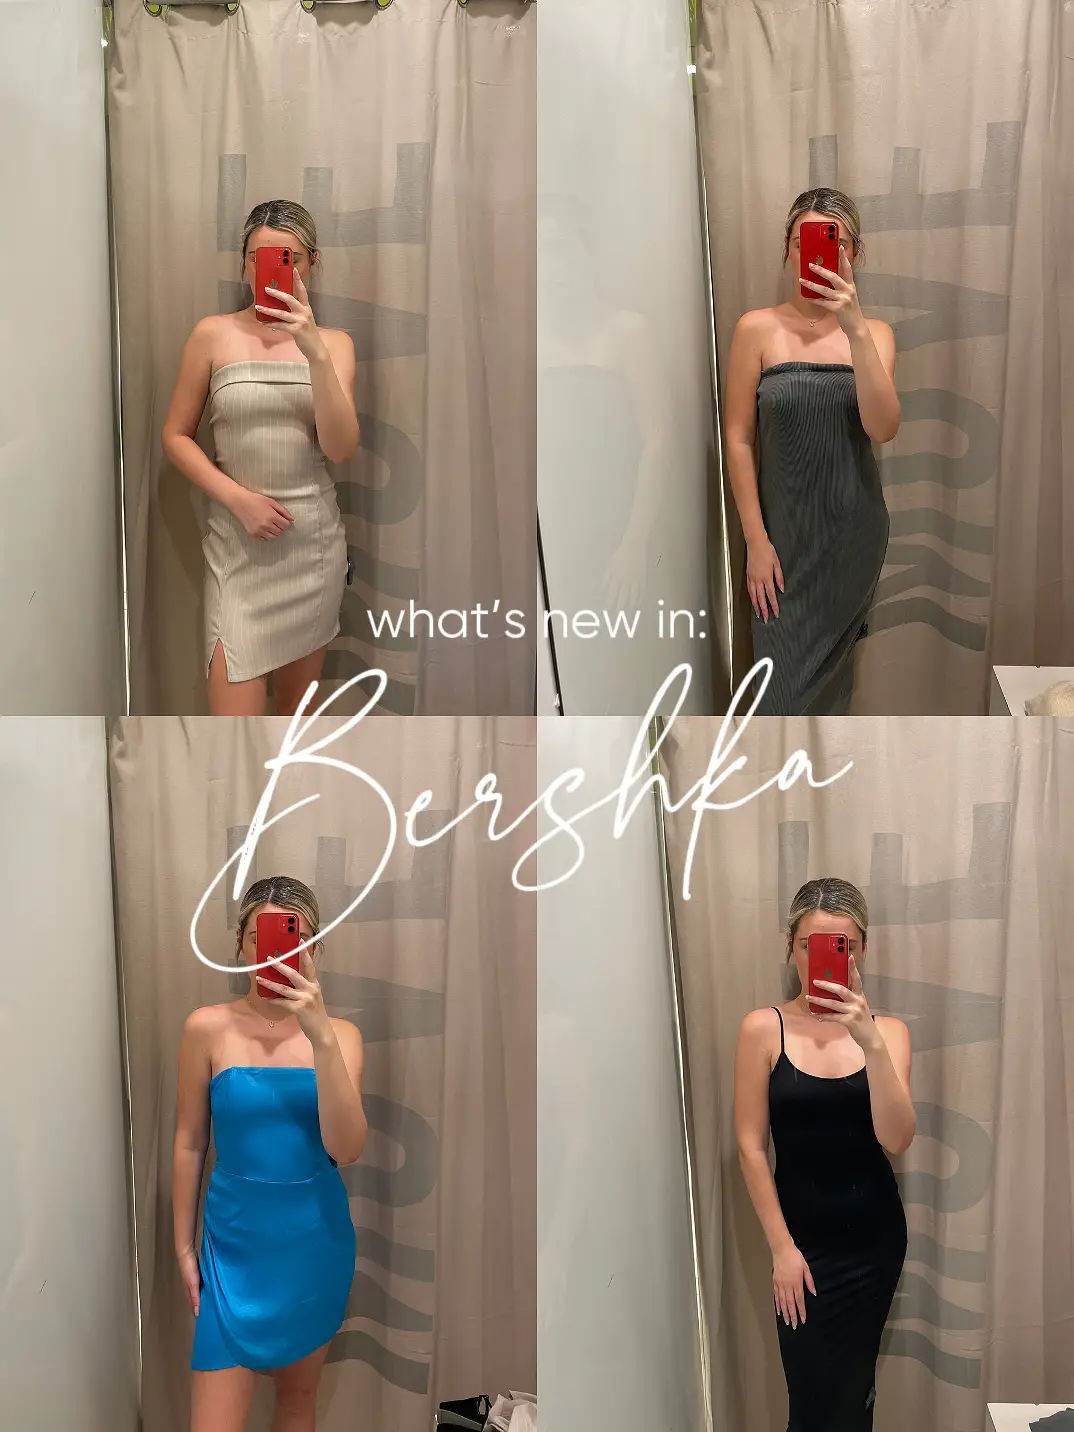 Bershka dress for less: Skims-inspired style - Lemon8 Search